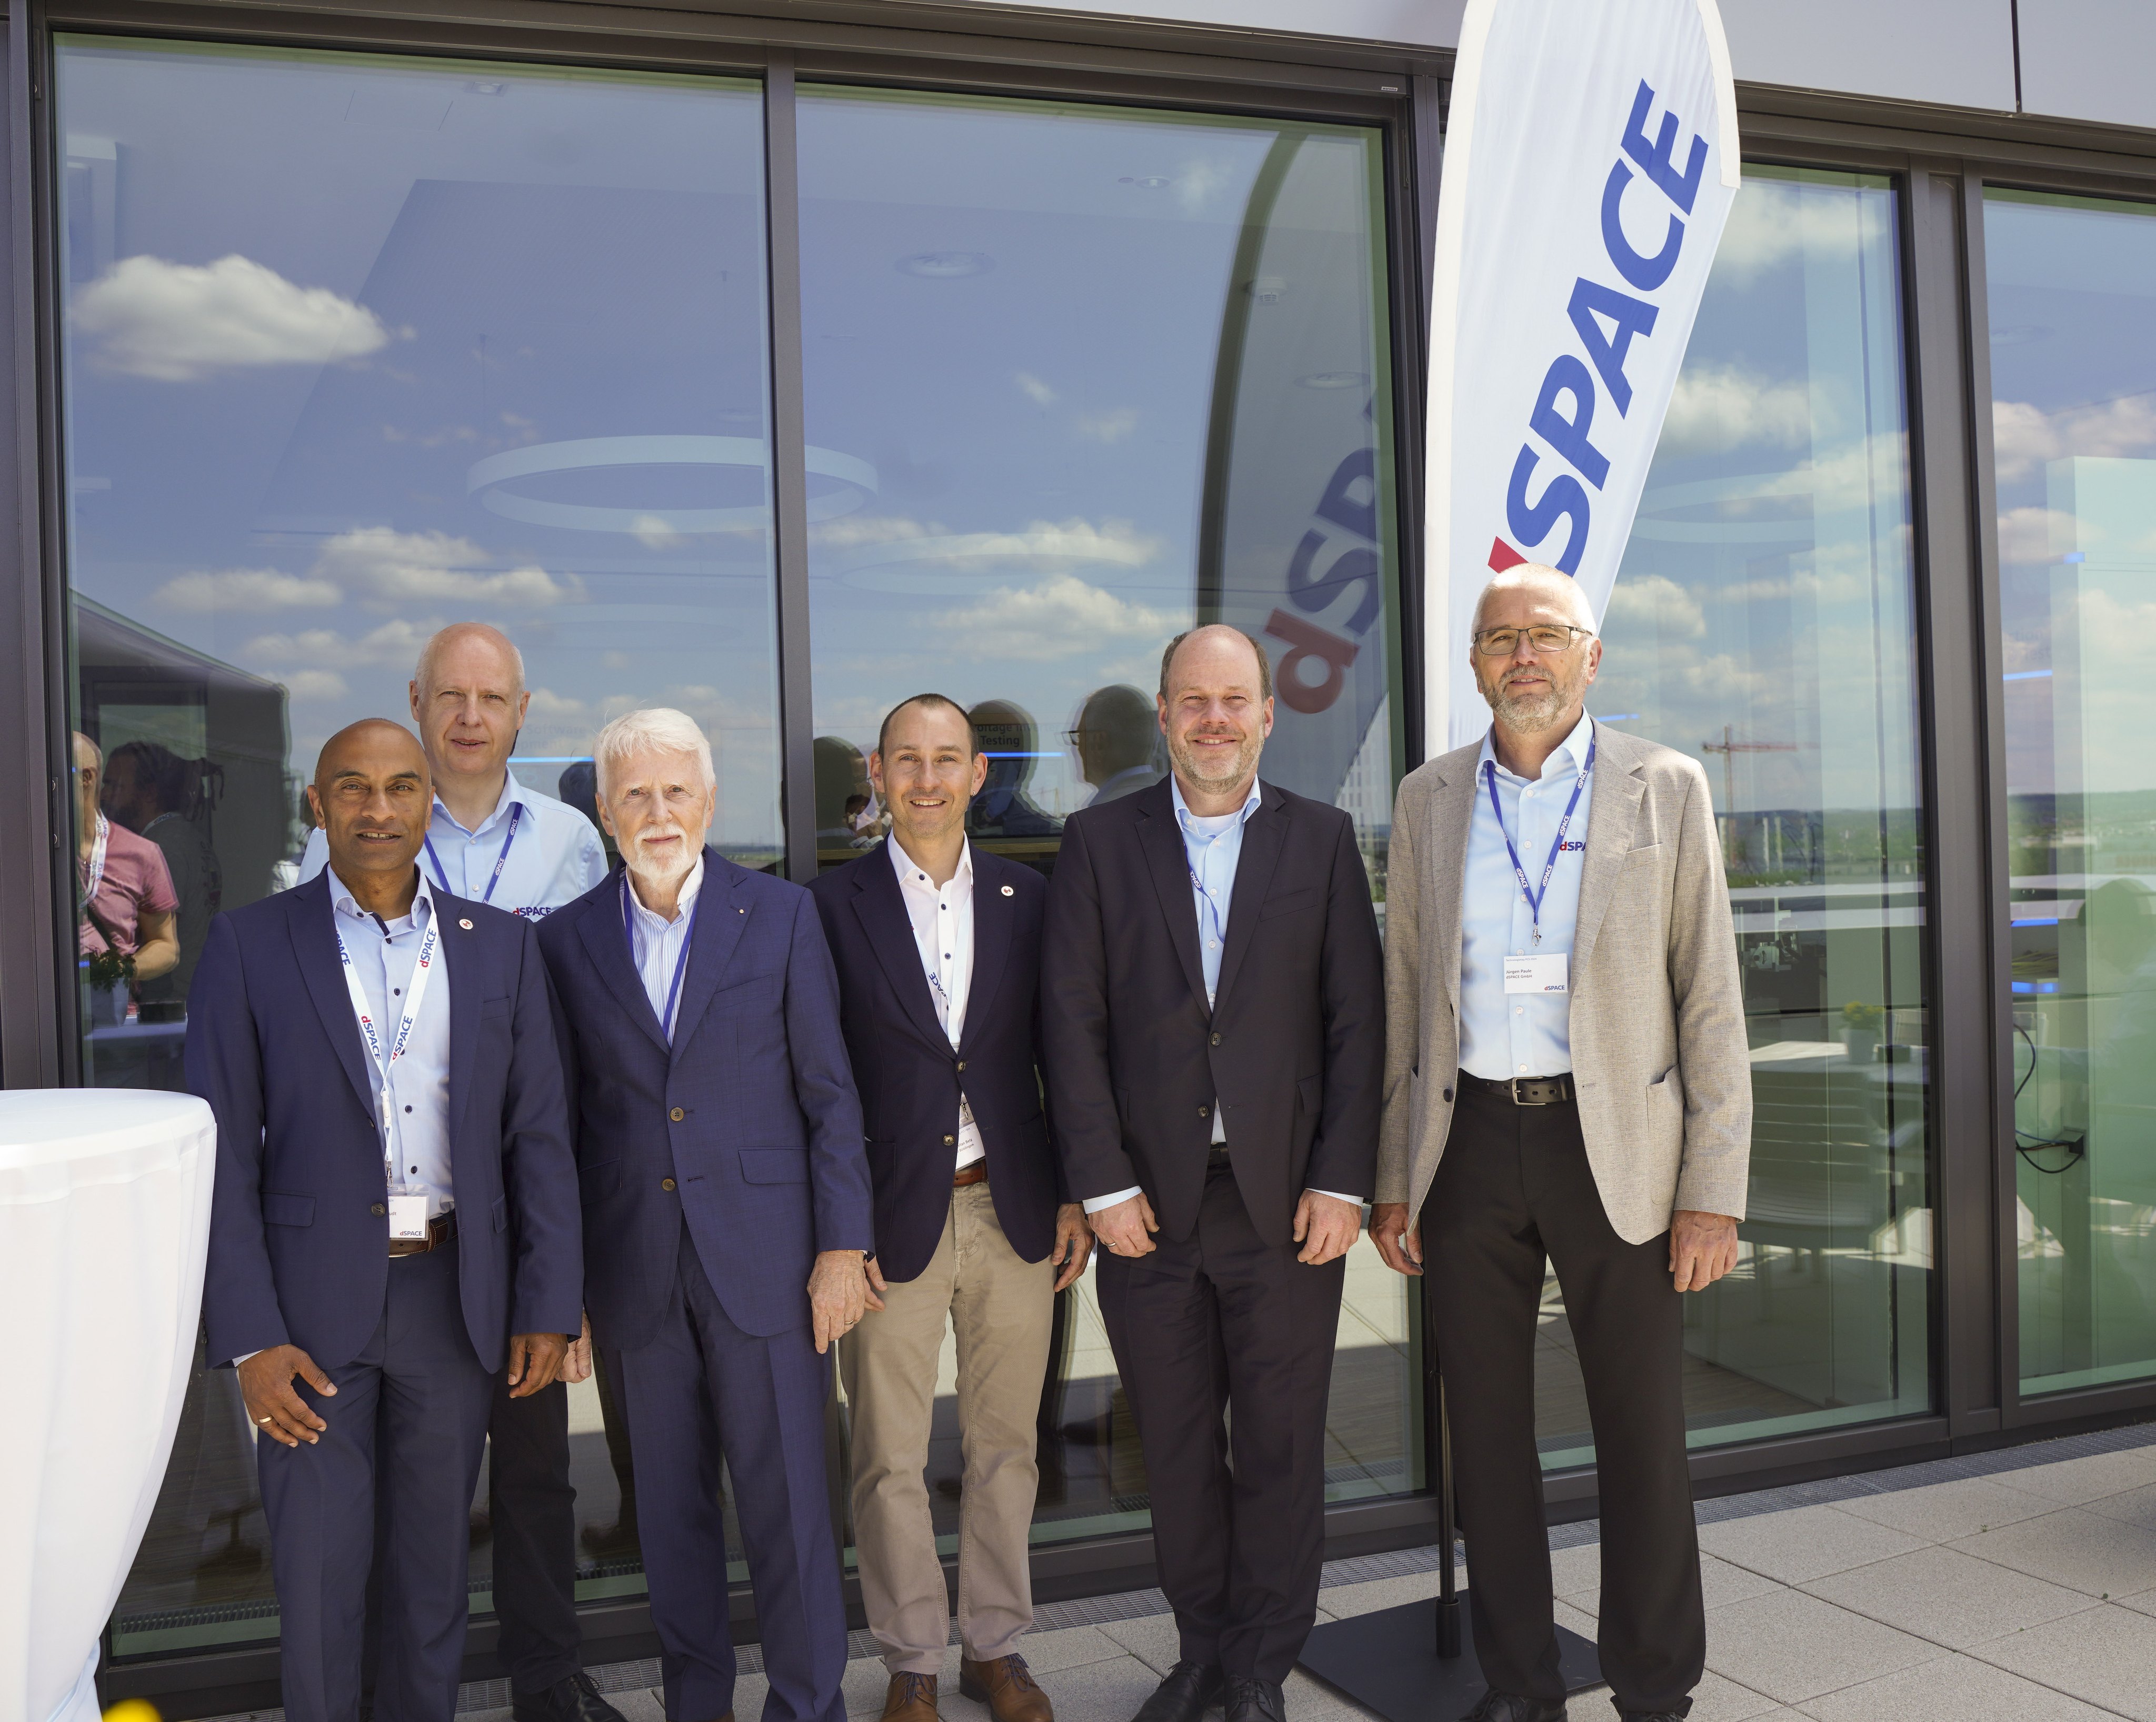 Beim „Tech Day“ auf der Dachterrasse von dSPACE in Böblingen (von links): Dominic Schaudt, Dr. Herbert Schütte, Dr. Herbert Hanselmann, 
Dr. Stefan Belz, Dr. Carsten Hoff und Jürgen Paule.